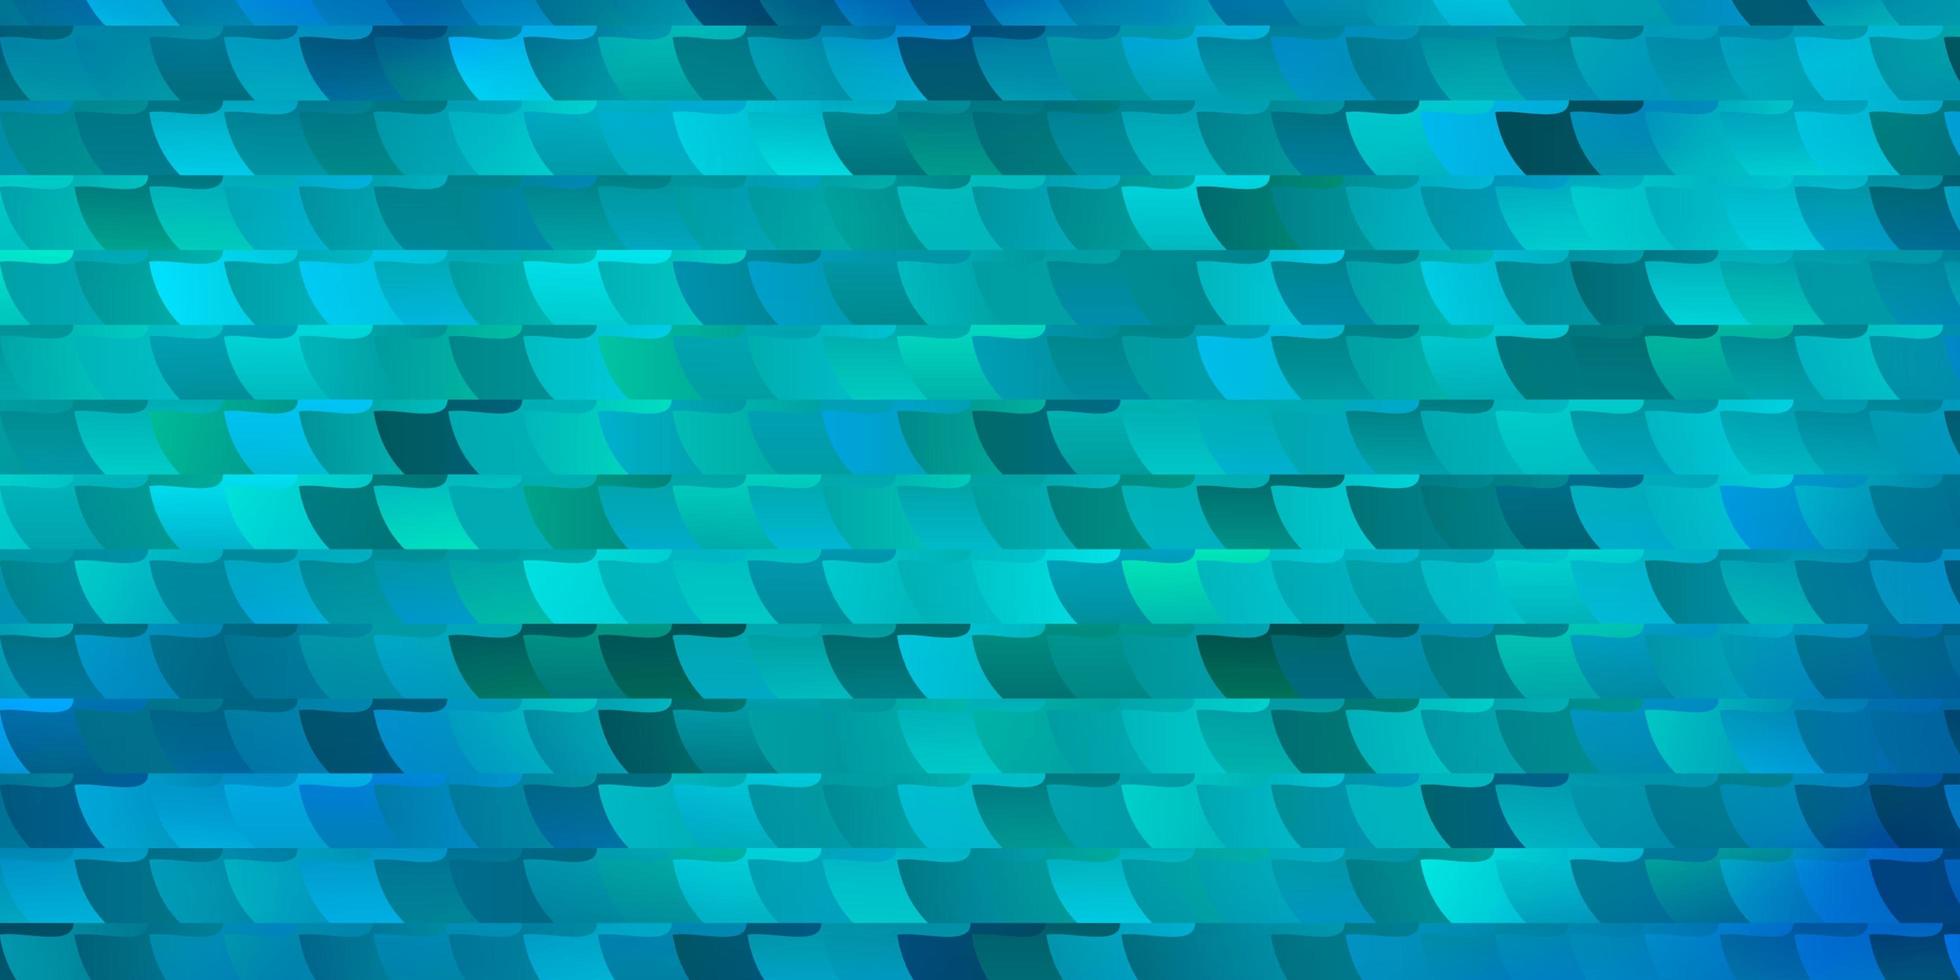 plantilla de vector azul claro con rectángulos